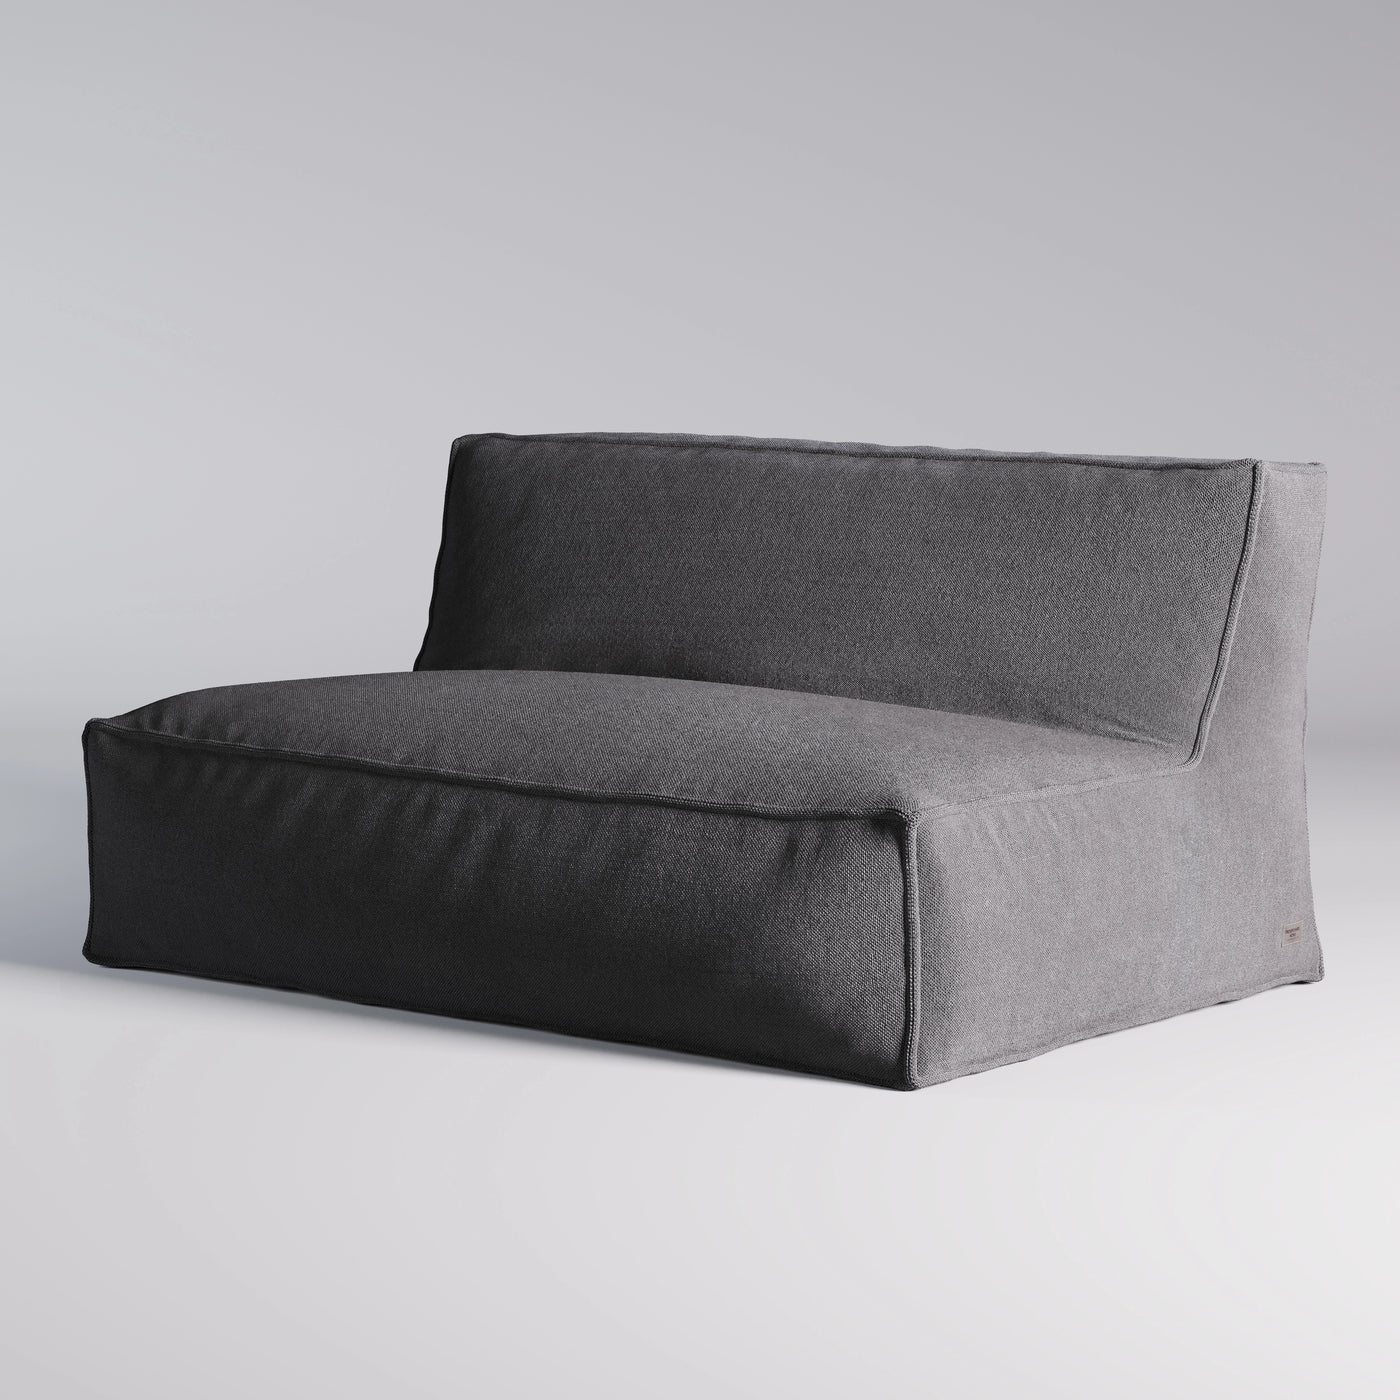 The Lounge Sofa